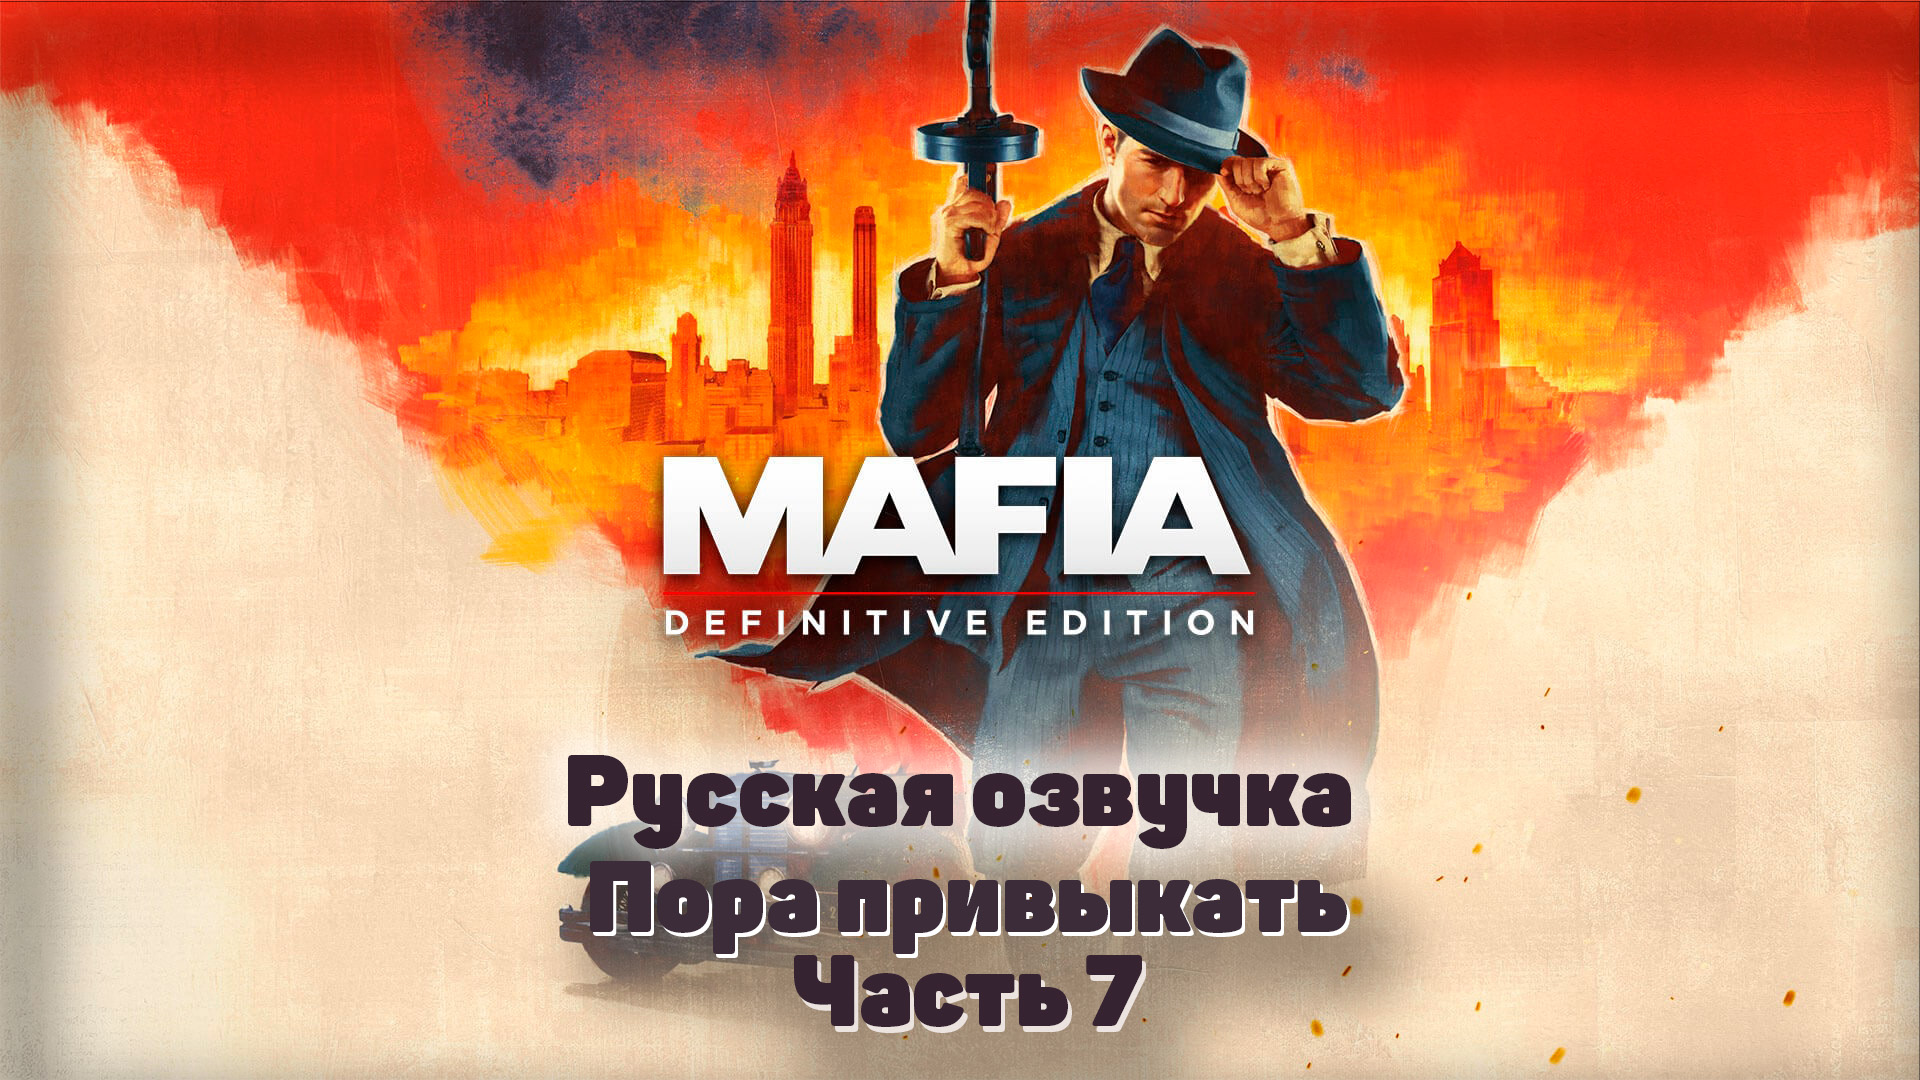 Mafia: Definitive Edition  Часть 7 Пора привыкать